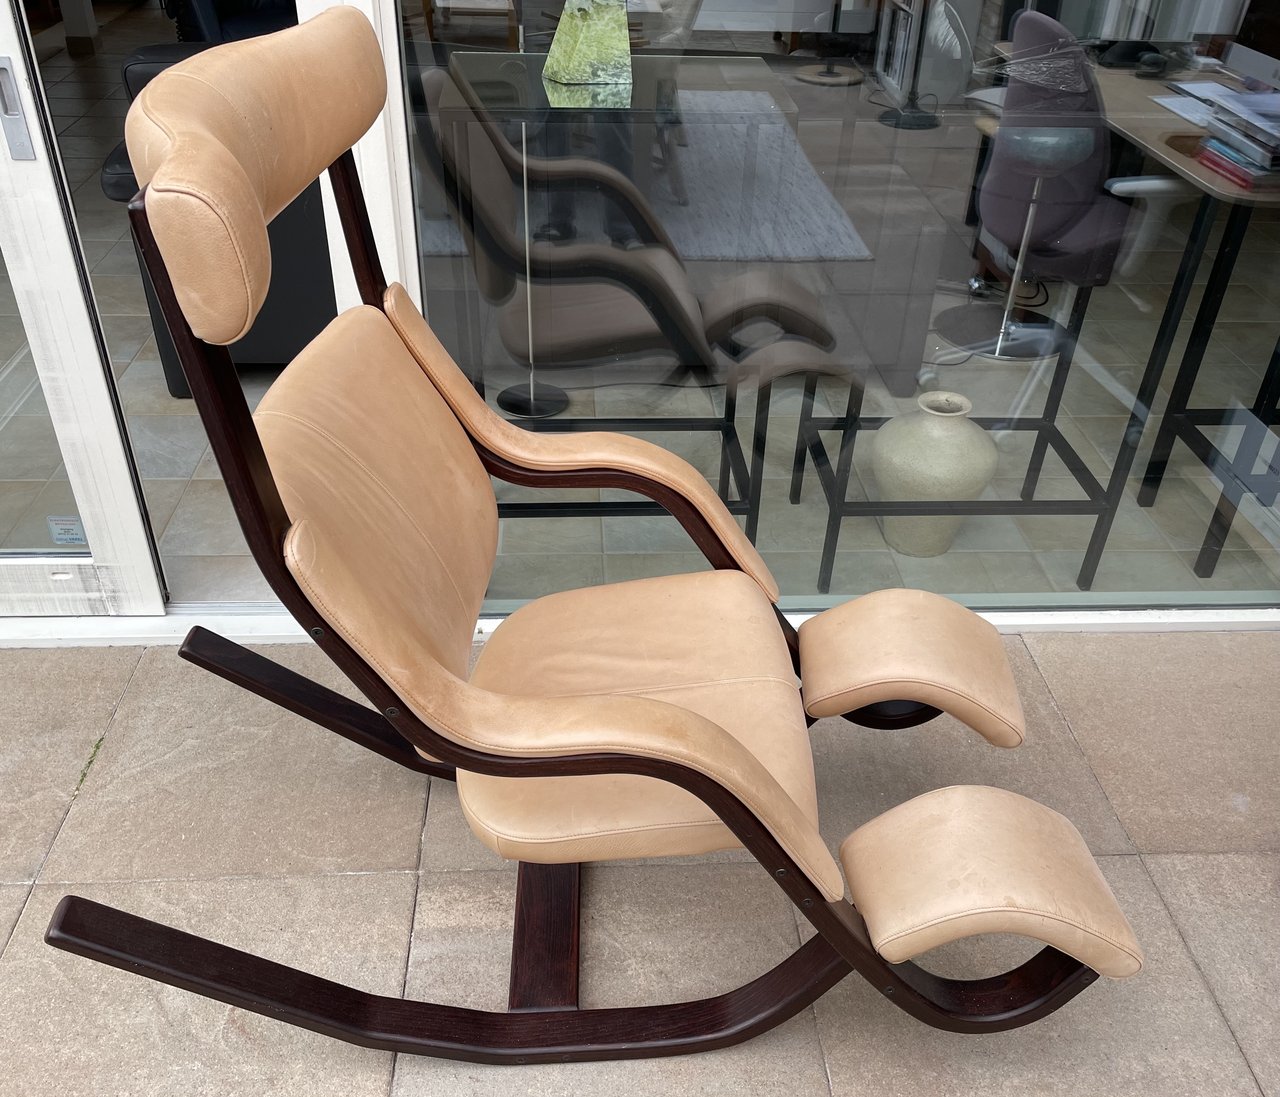 Schommelstoel aanbod schommelstoelen te koop | Whoppah